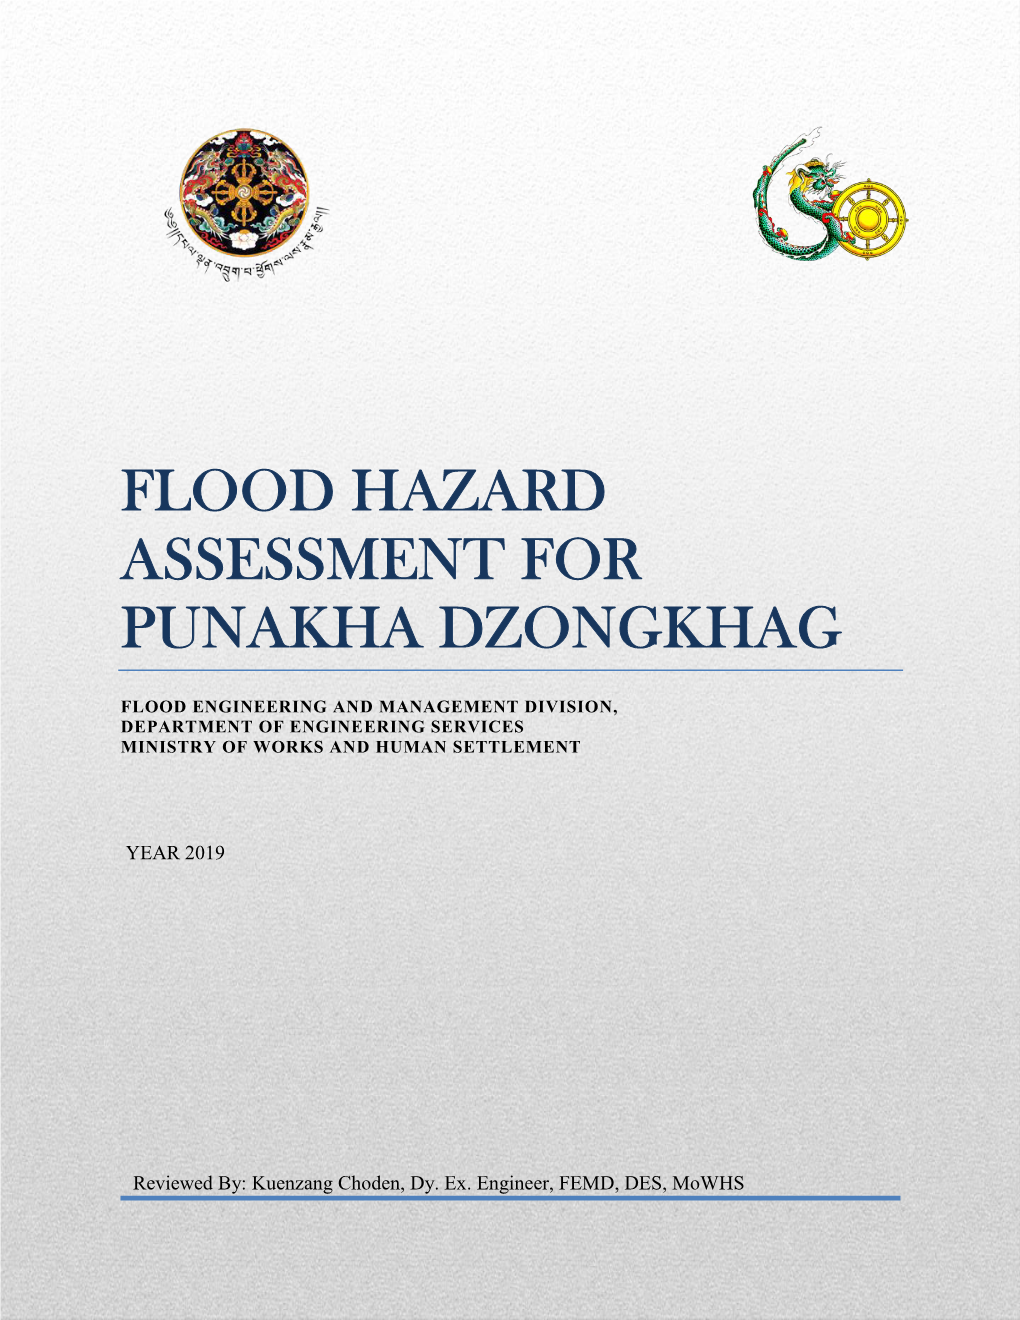 Flood Hazard Assessment for Punakha Dzongkhag